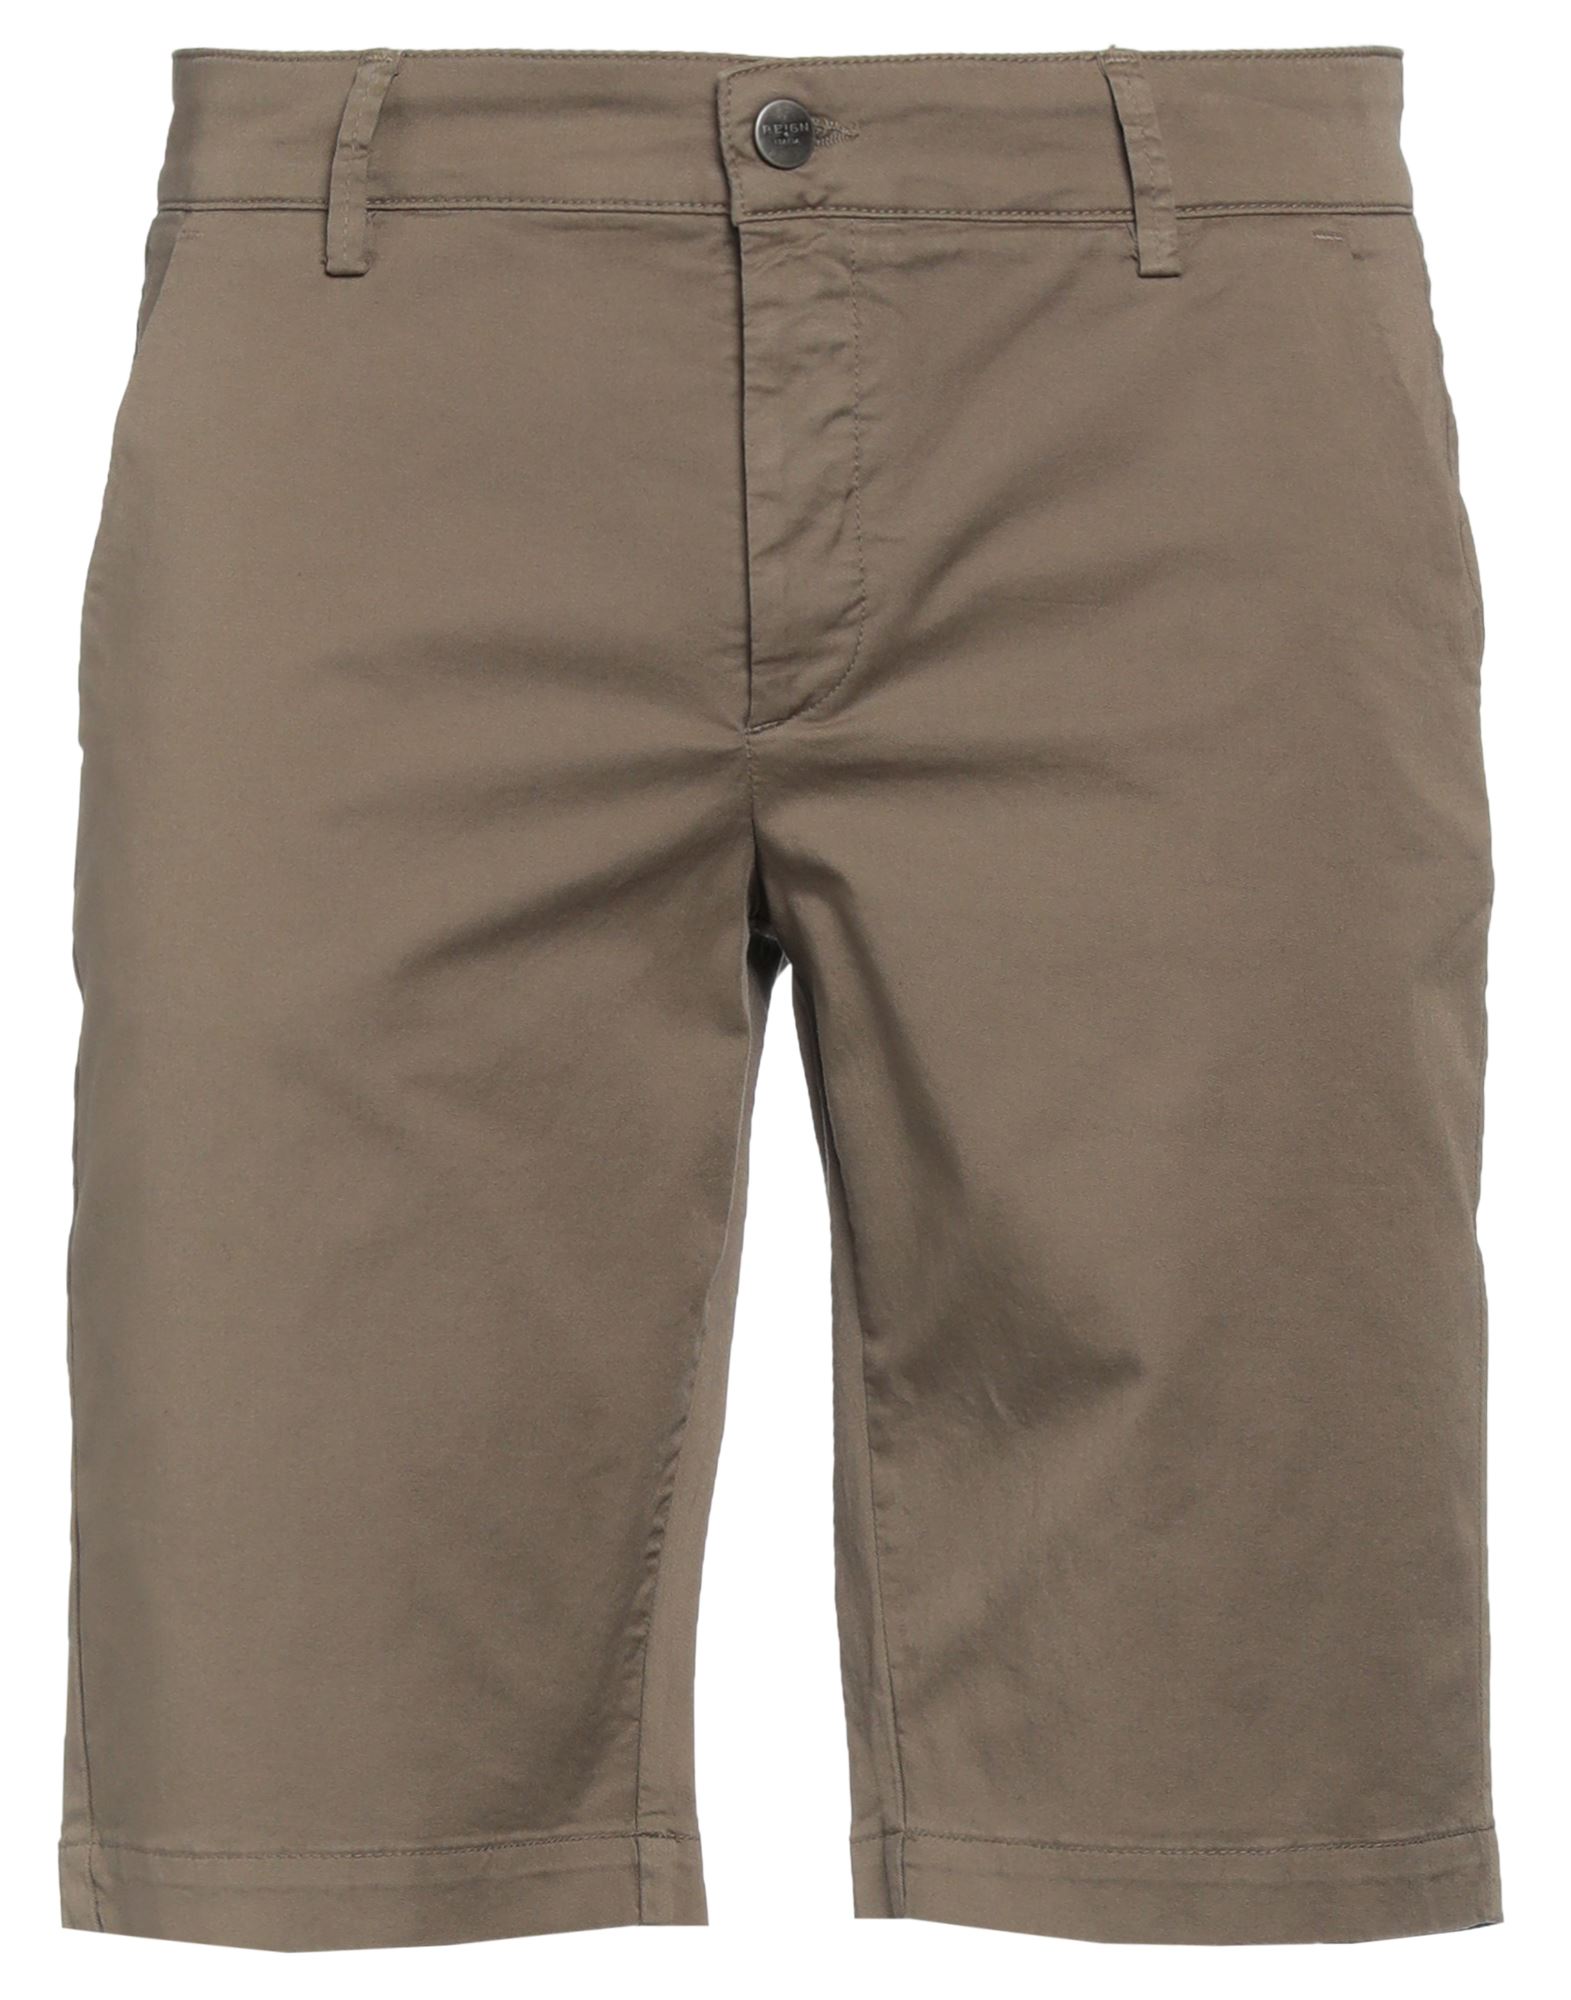 Reign Man Shorts & Bermuda Shorts Khaki Size 32 Cotton, Elastane In Beige